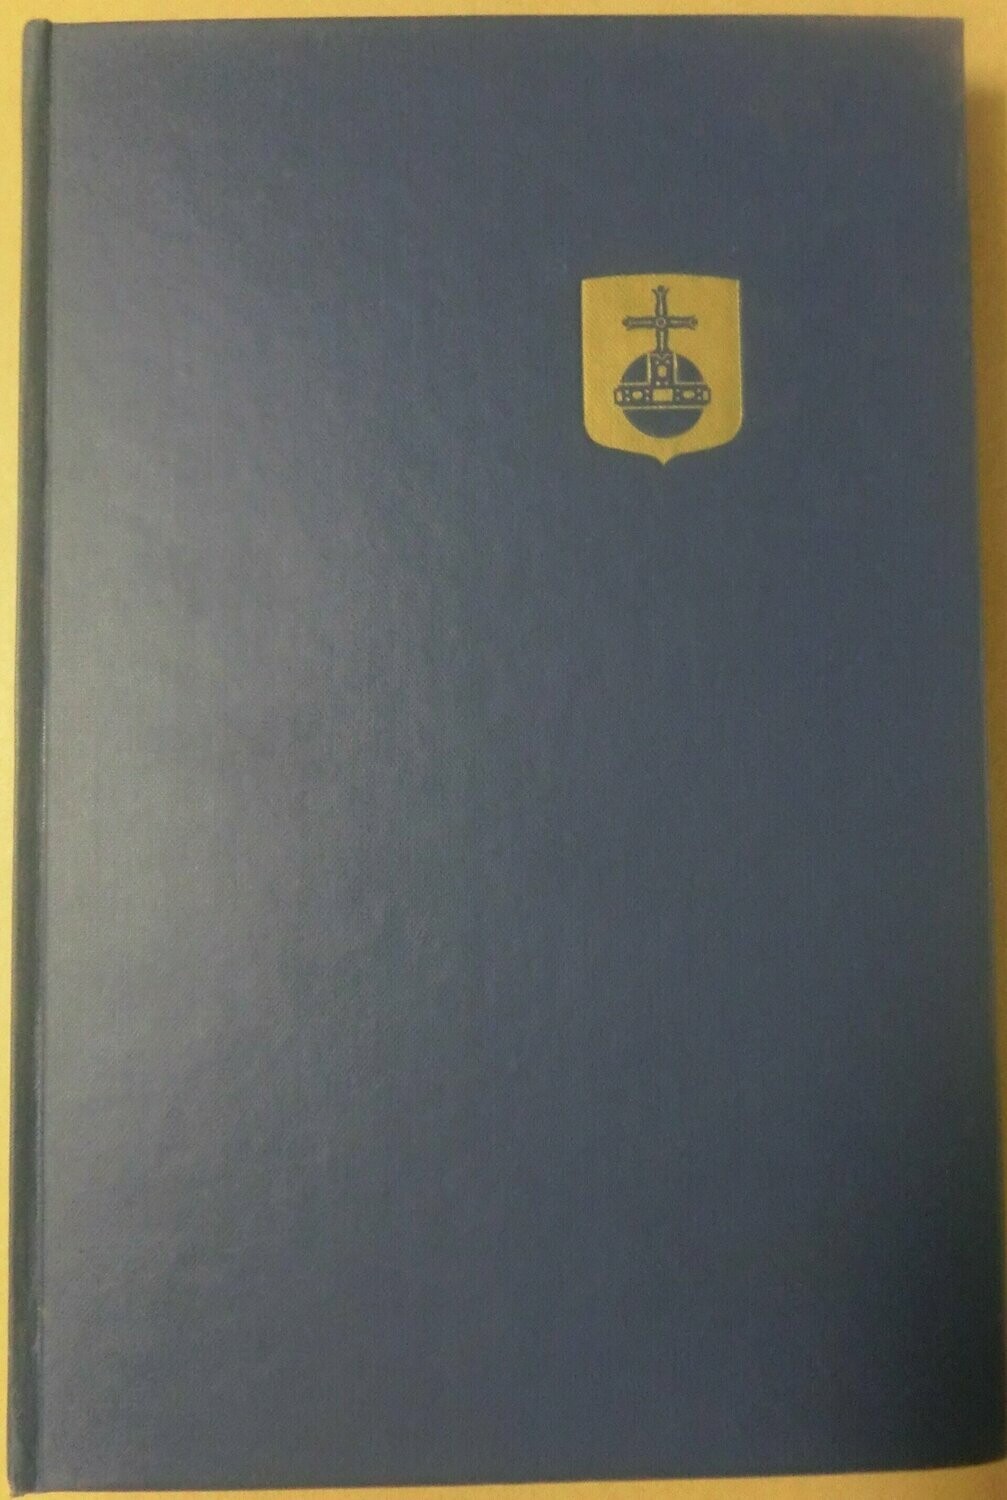 STF årsskrift 1962 - Uppland